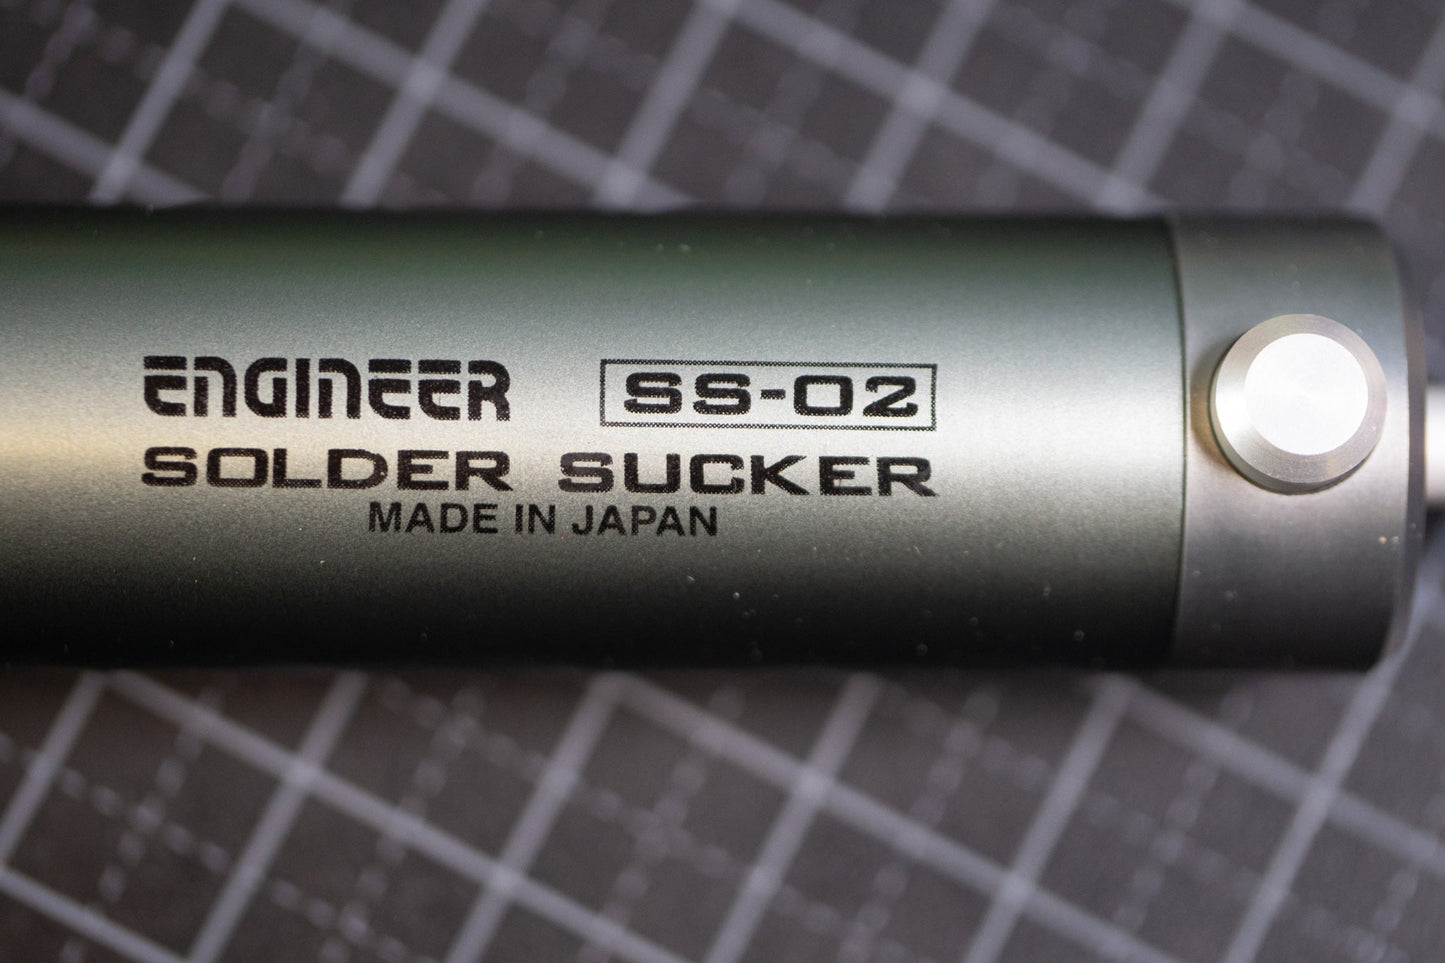 SS-02 Solder Sucker